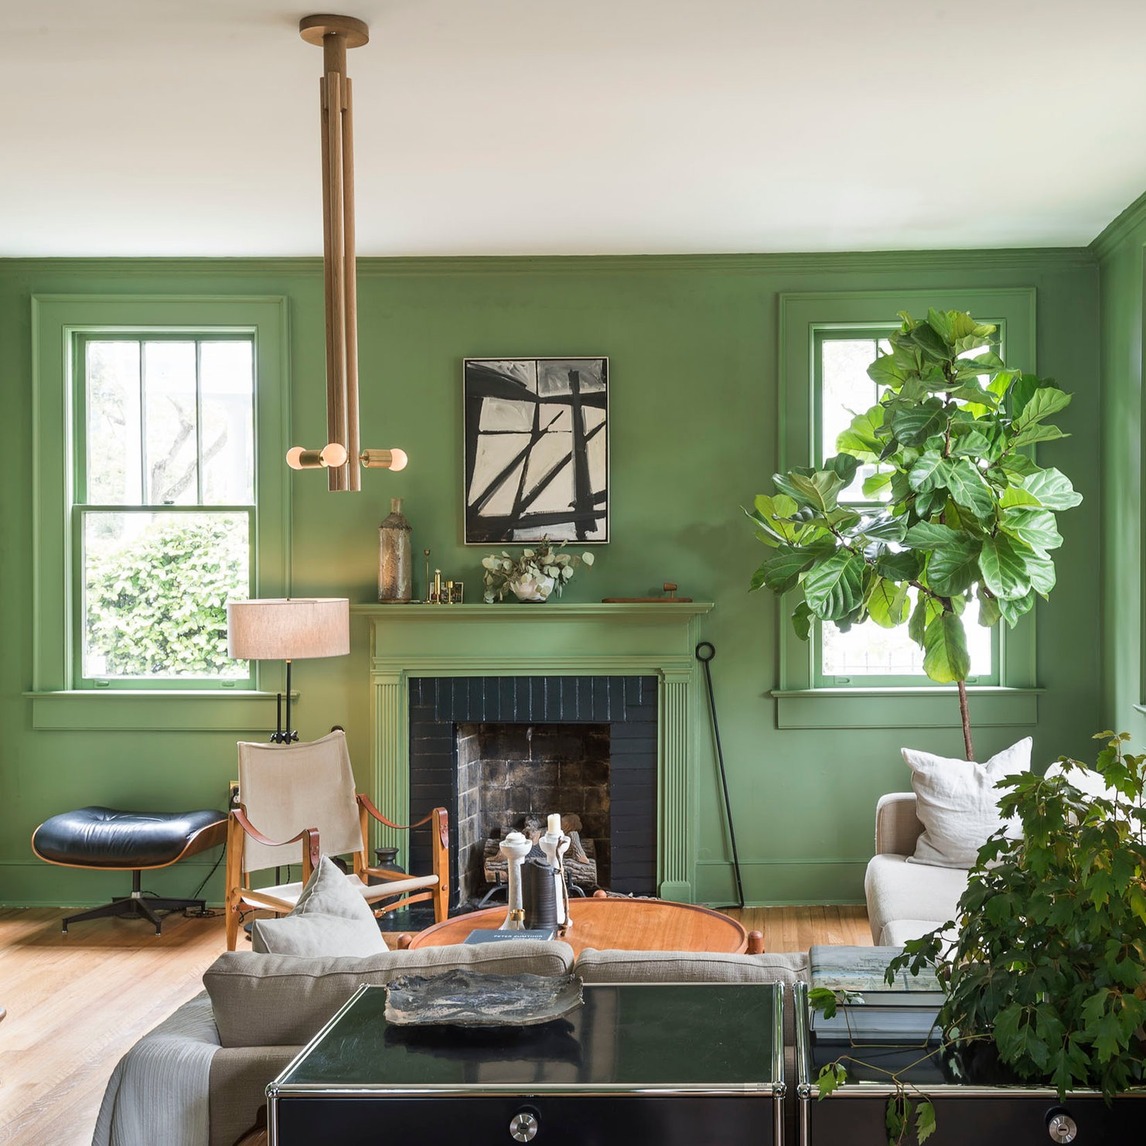 美式乡村风格简约清爽客厅绿色墙面漆设计图 – 设计本装修效果图